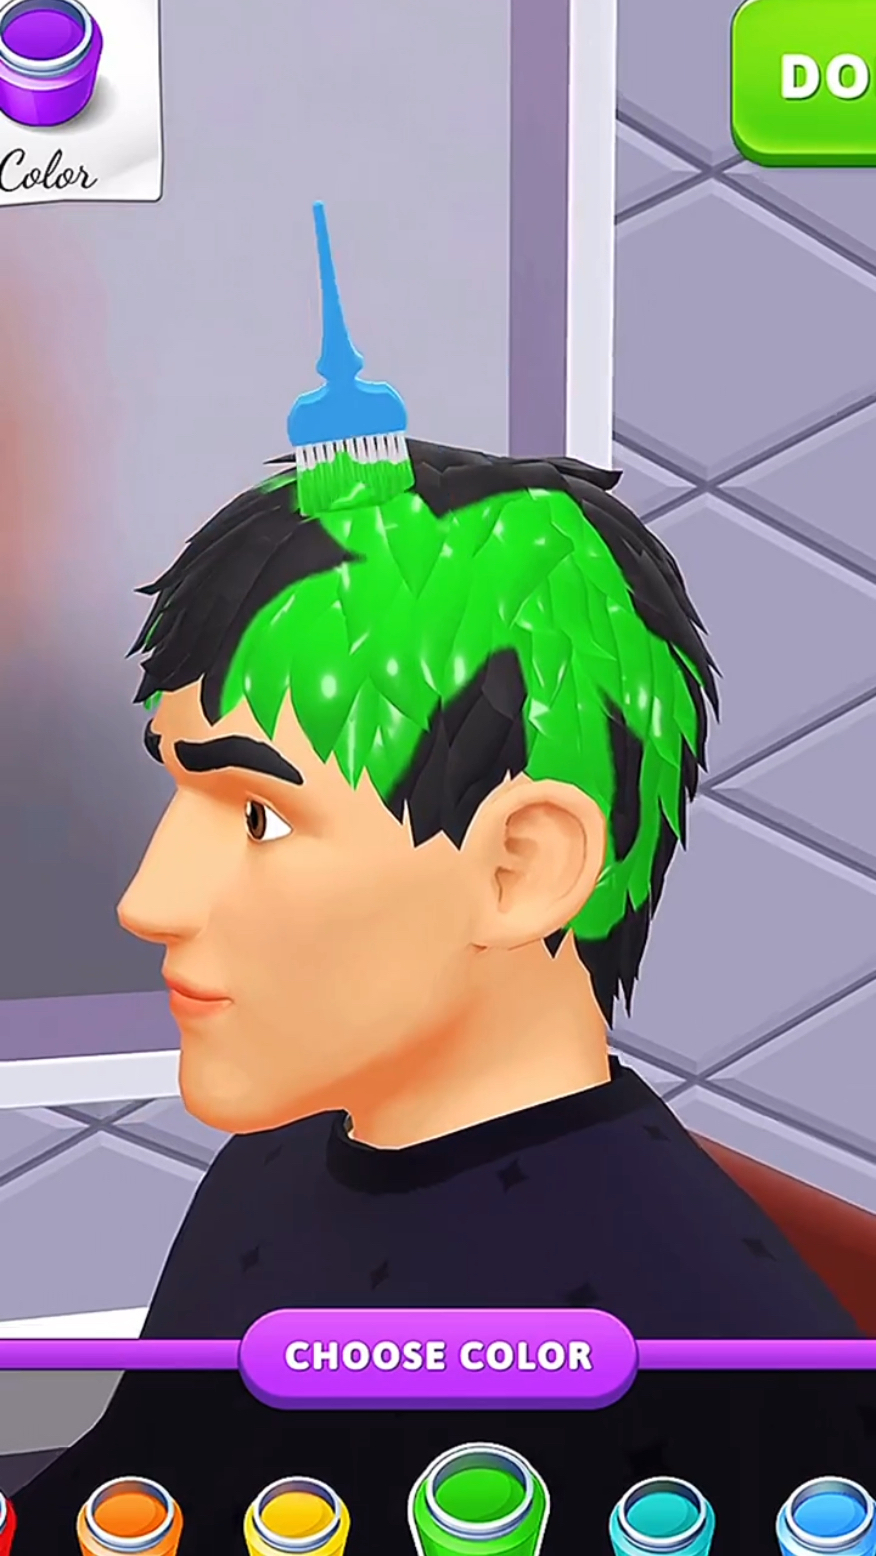 给唐三哥哥染个绿色的头发!